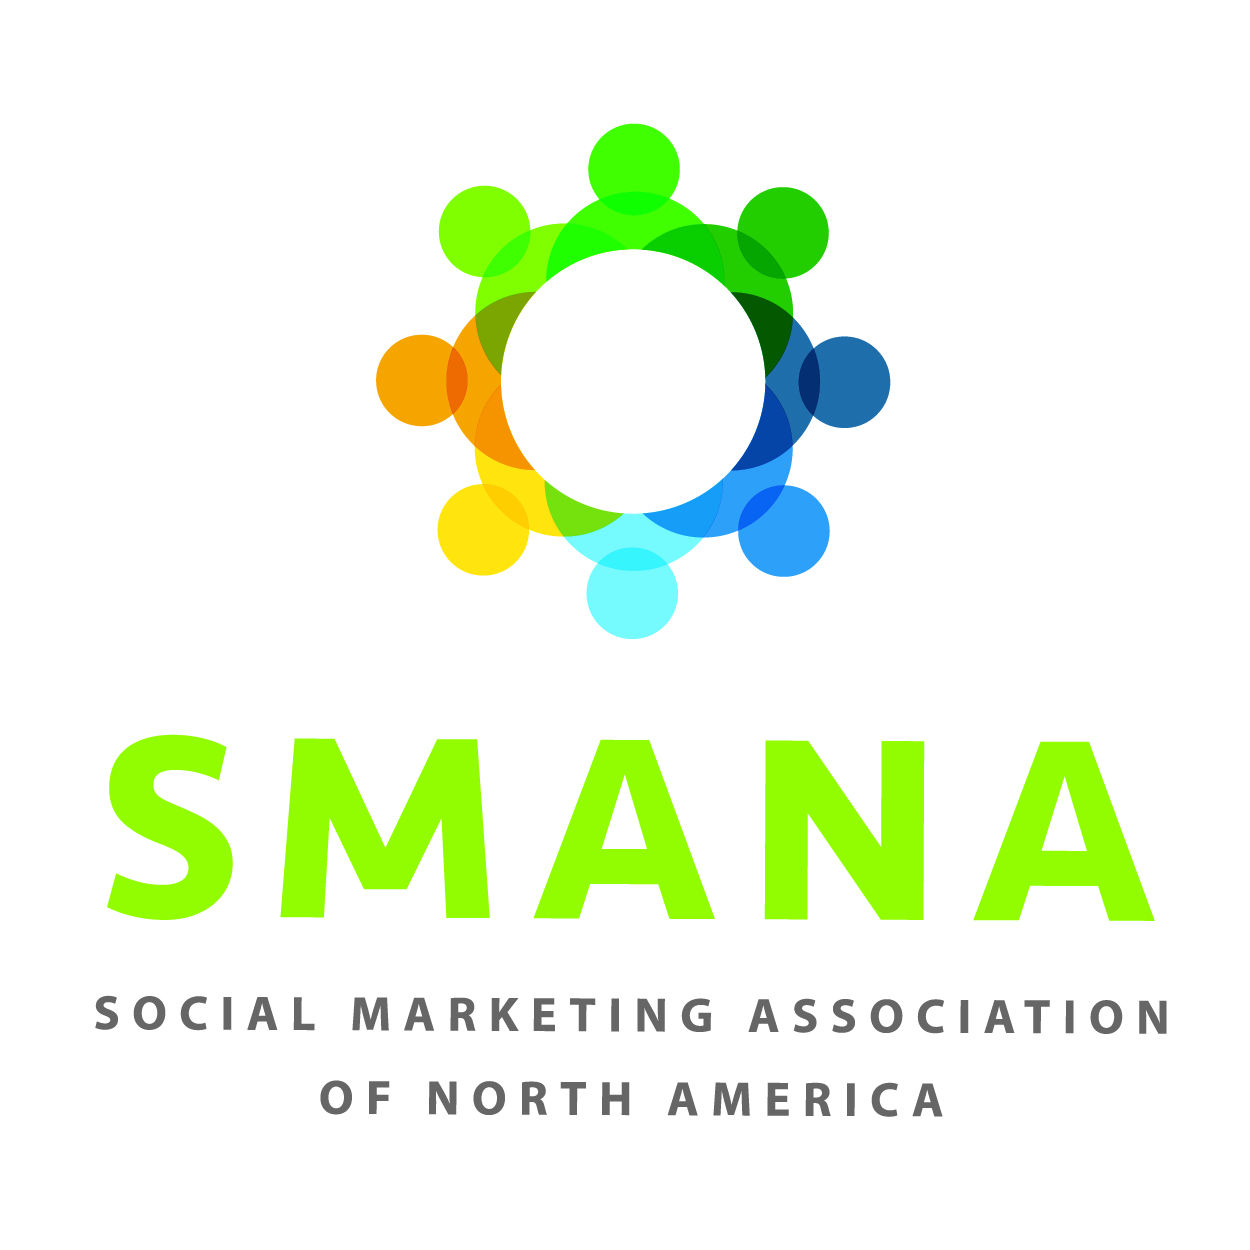 Social Marketing Association of North America